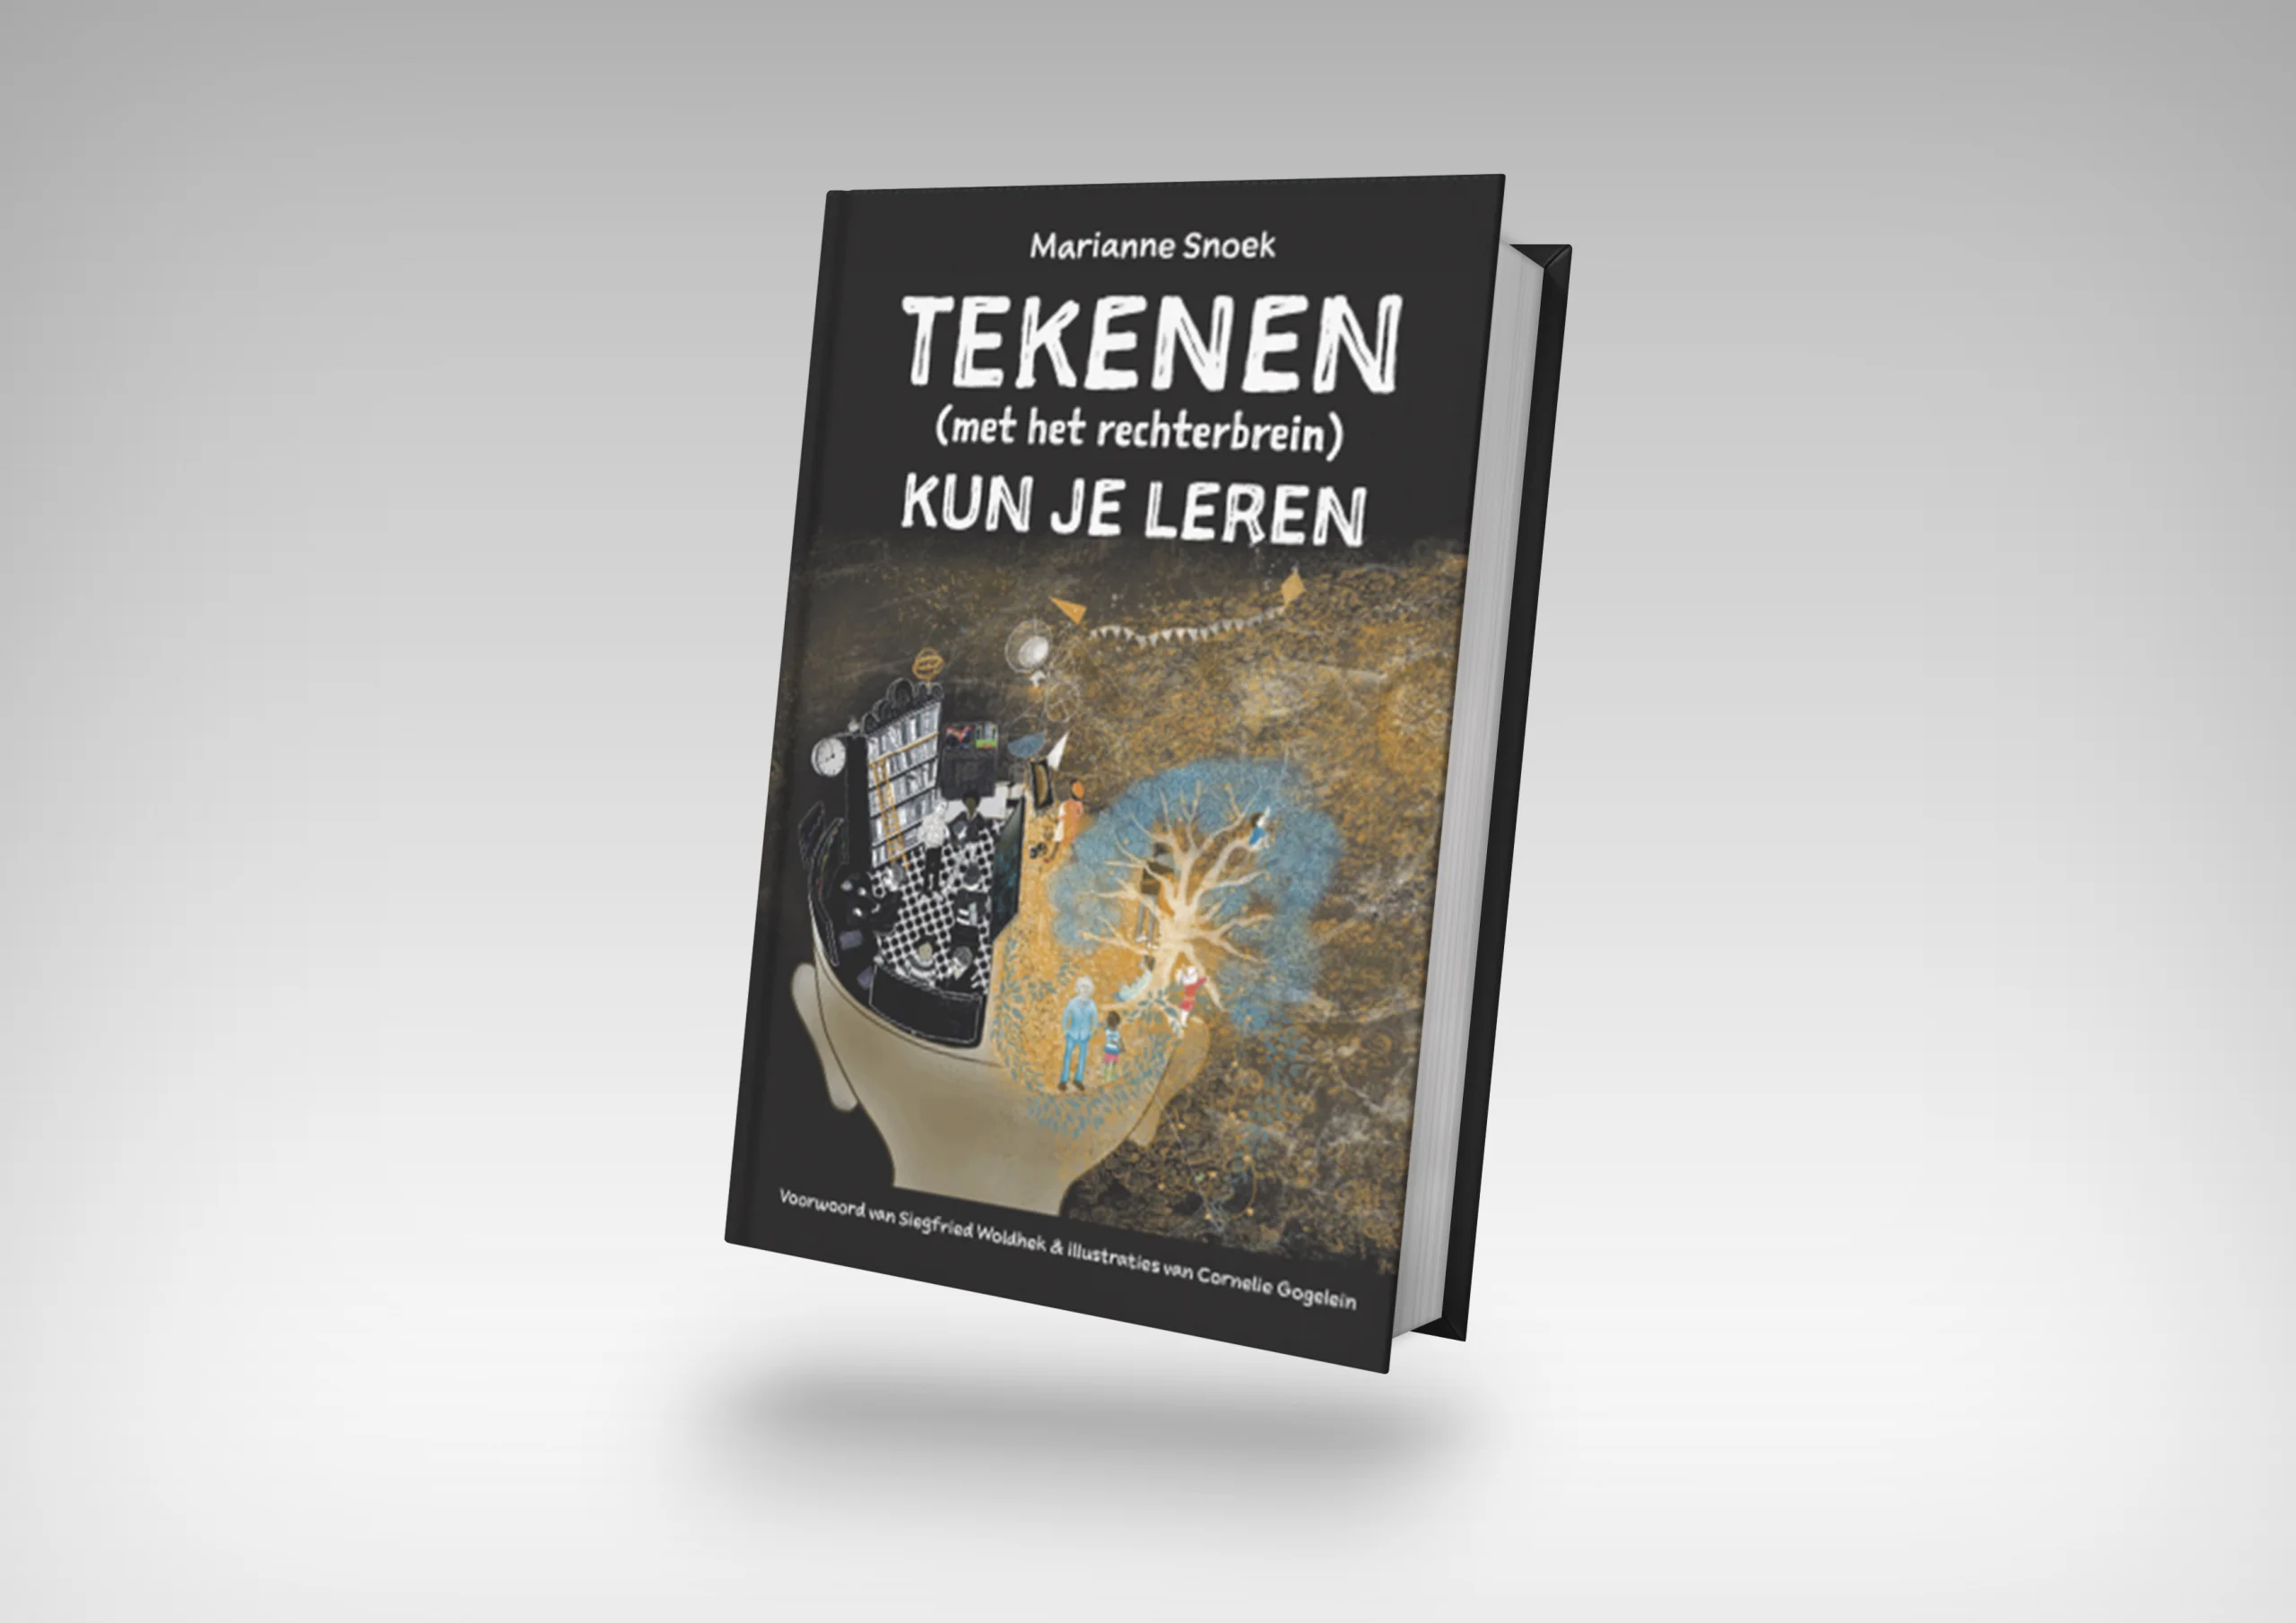 Een staand boek met de titel "Het boek TEKENEN(met het rechterbrein) KUN JE LEREN" van Marianne Snoek, met een omslag met artistieke beelden, waaronder een tekenblok en hersenillustraties.